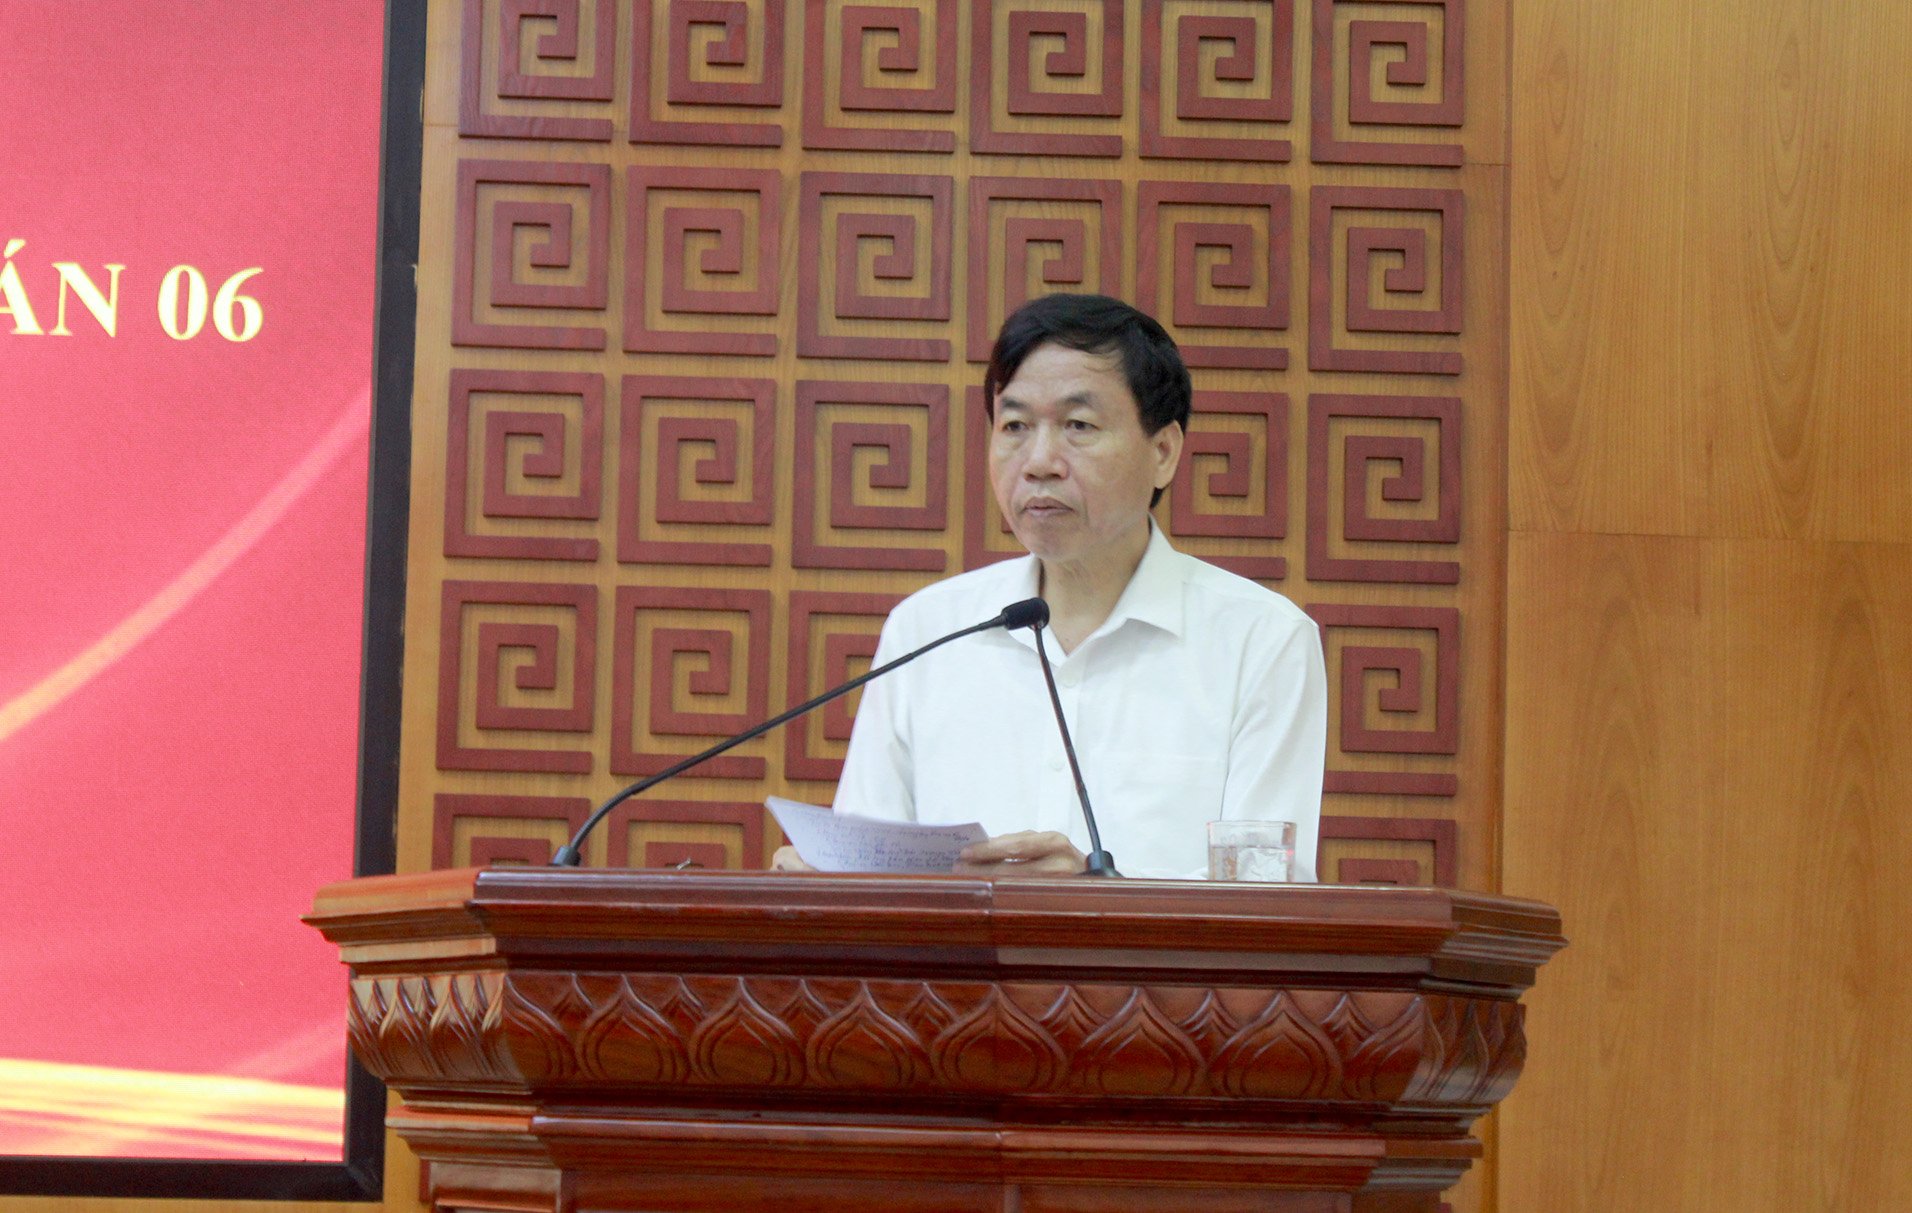 Đồng chí Lê Văn Lương - Phó Bí thư Tỉnh ủy, Chủ tịch UBND tỉnh, Tổ trưởng Tổ công tác Đề án 06 phát biểu kết luận hội nghị.